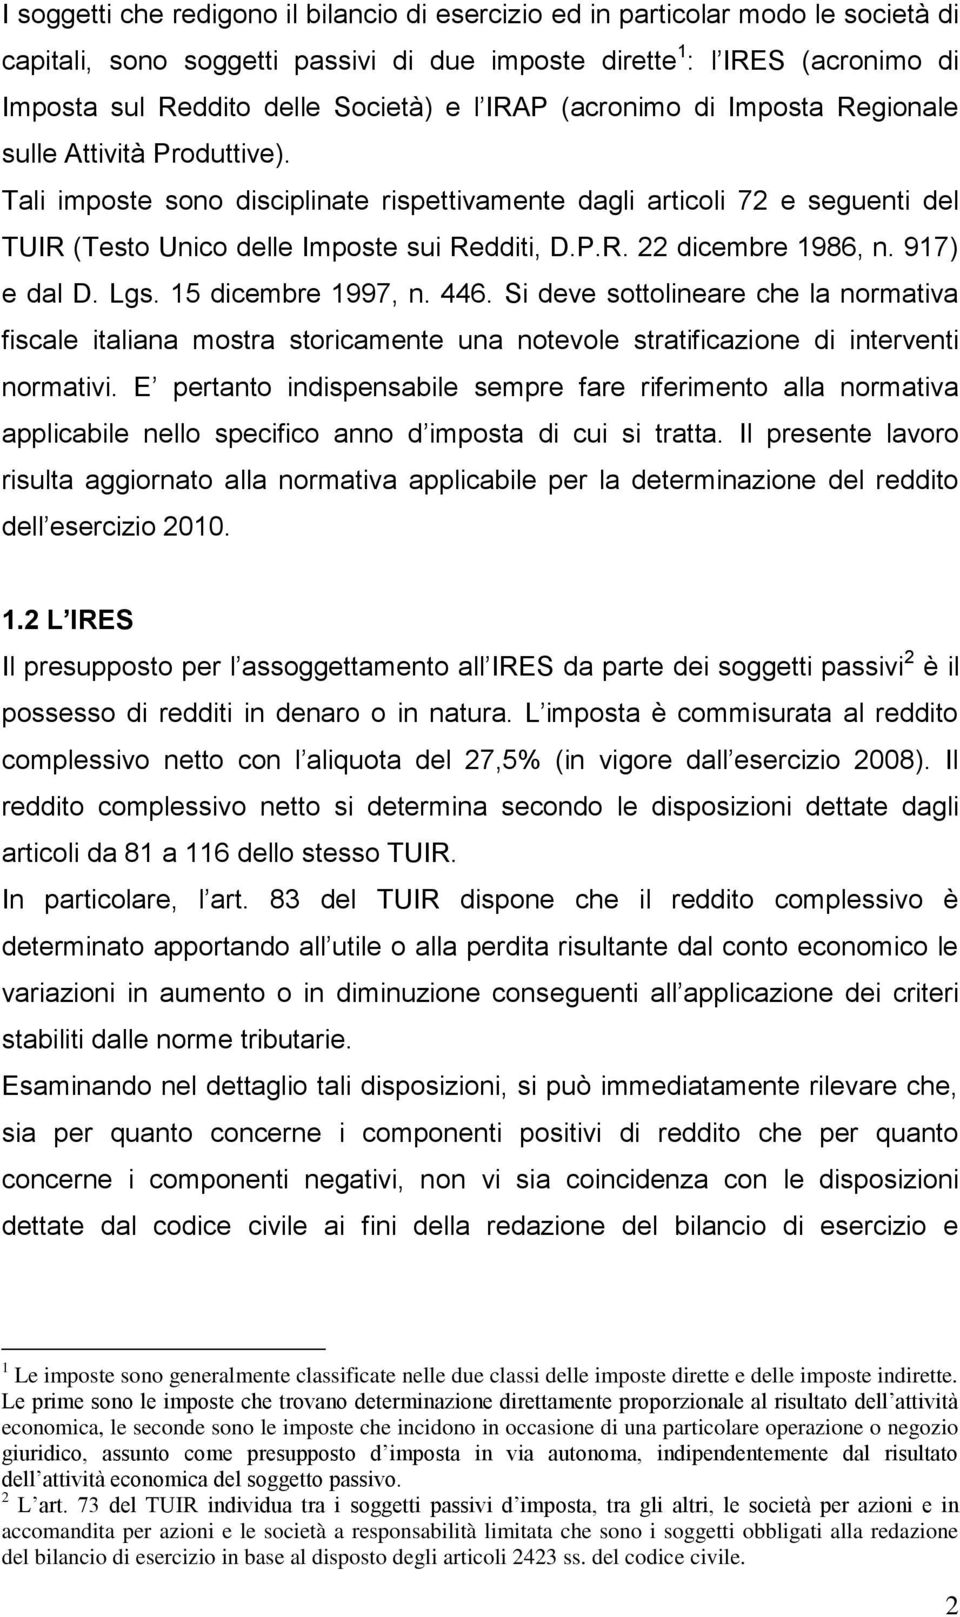 917) e dal D. Lgs. 15 dicembre 1997, n. 446. Si deve sottolineare che la normativa fiscale italiana mostra storicamente una notevole stratificazione di interventi normativi.